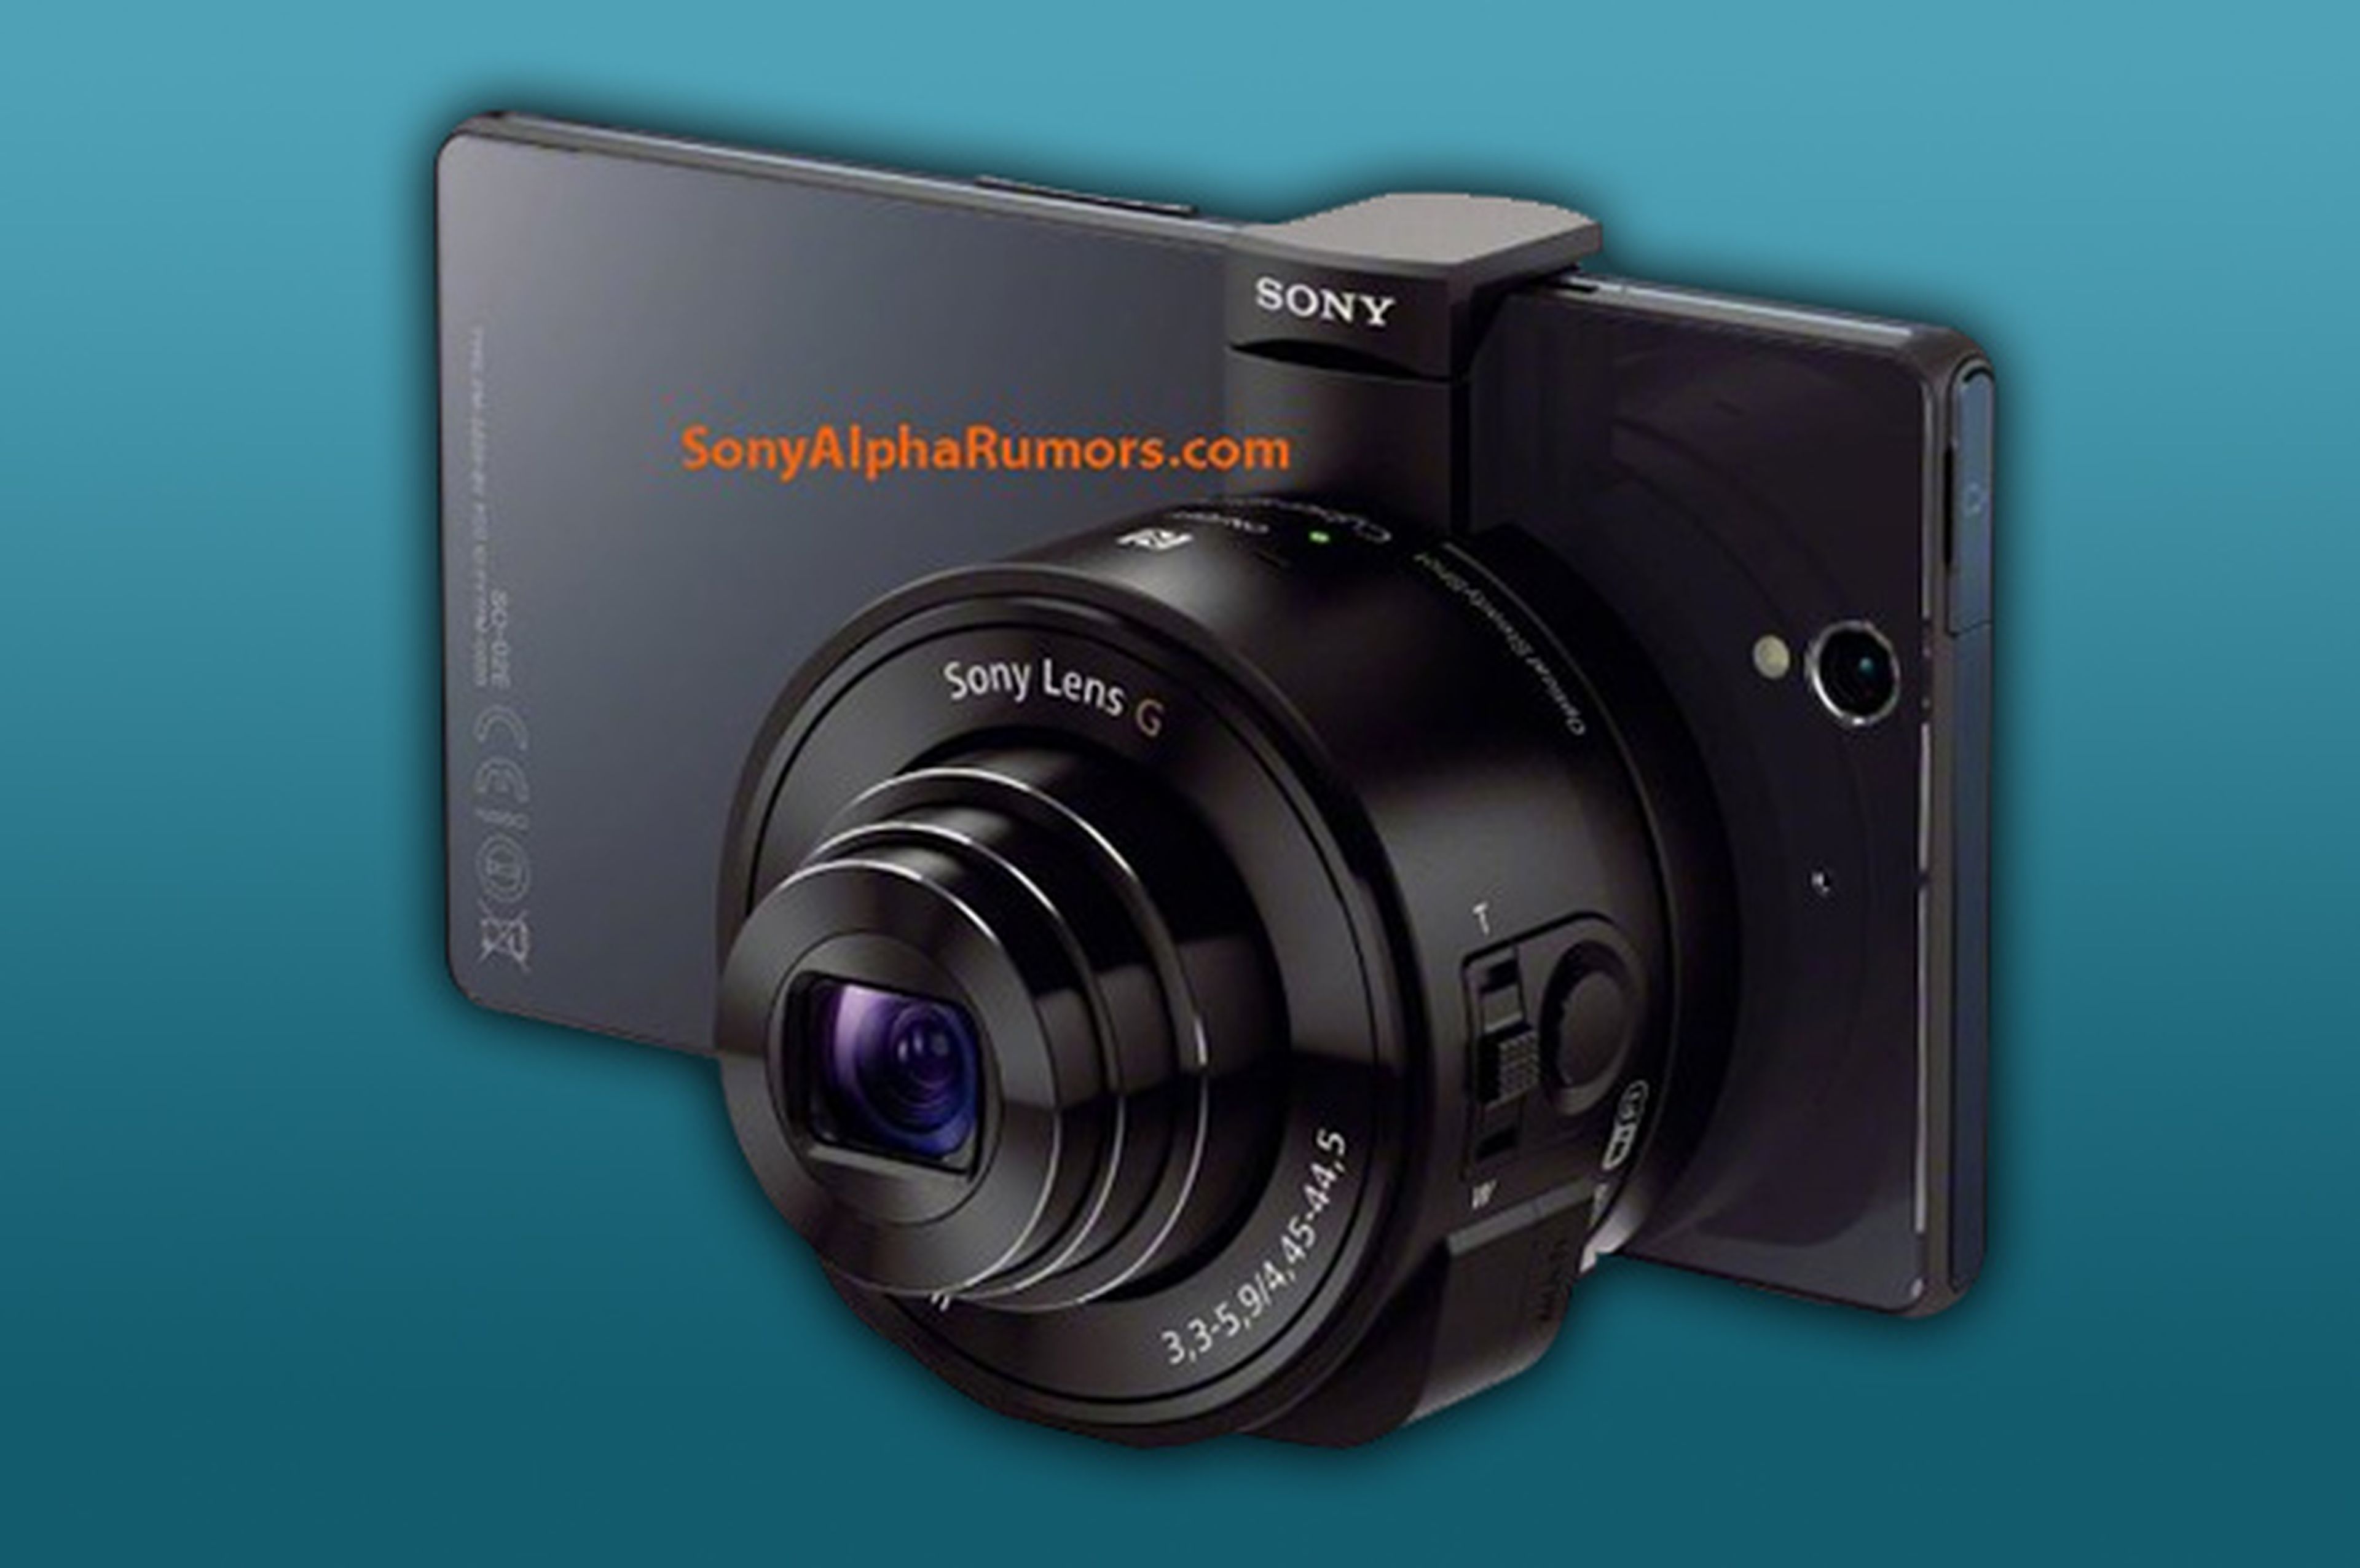 Sony tiene un lente/cámara para usar con tu smartphone